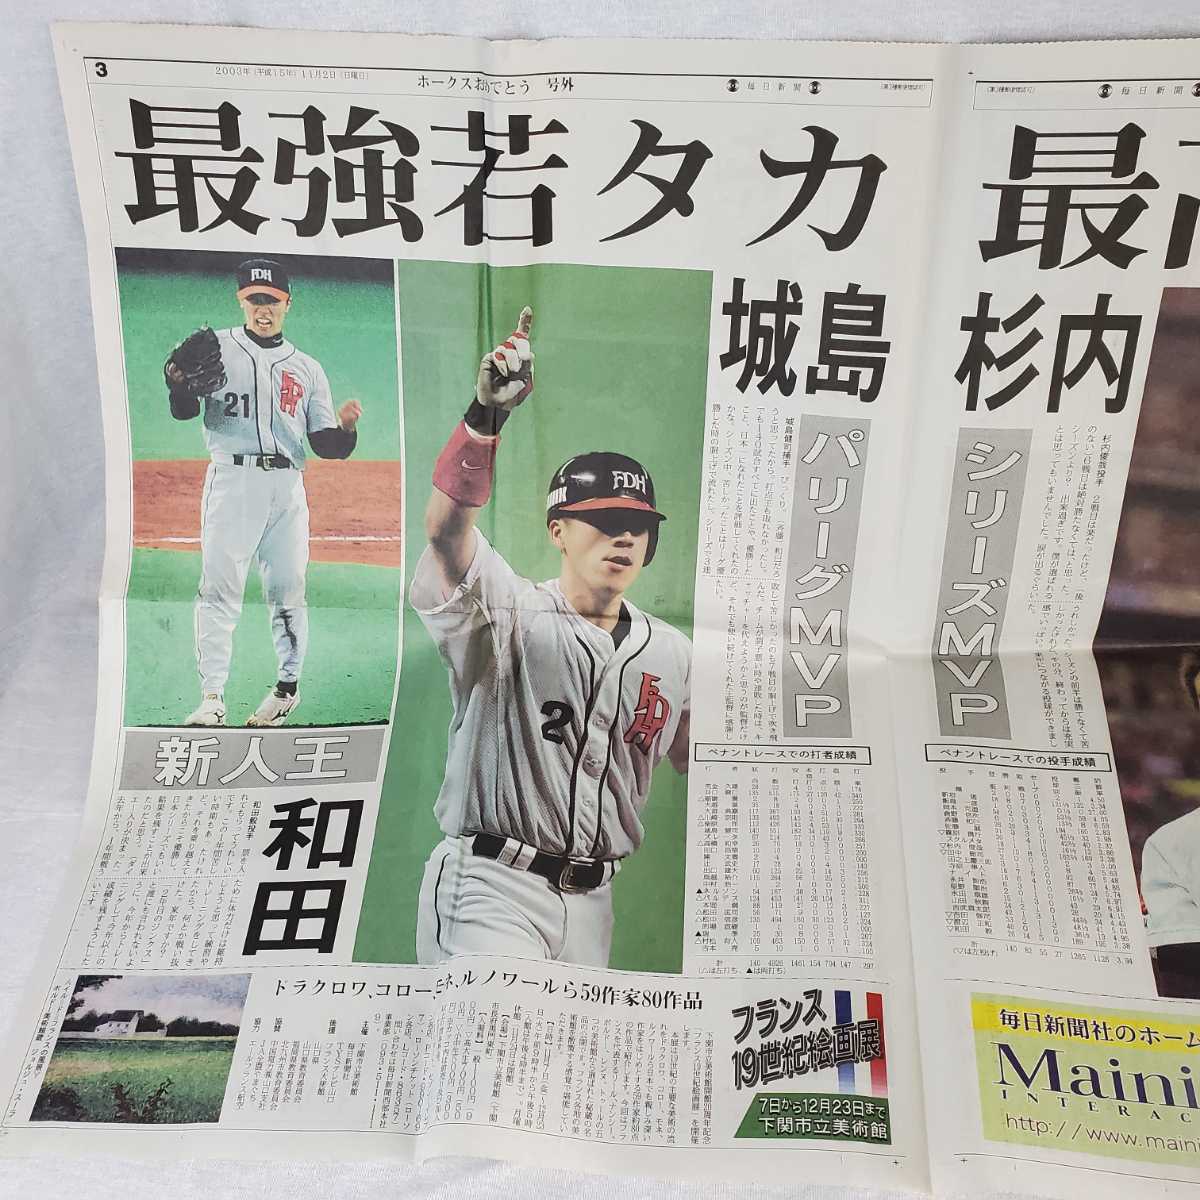 2003年 阪神タイガース優勝 号外 毎日新聞